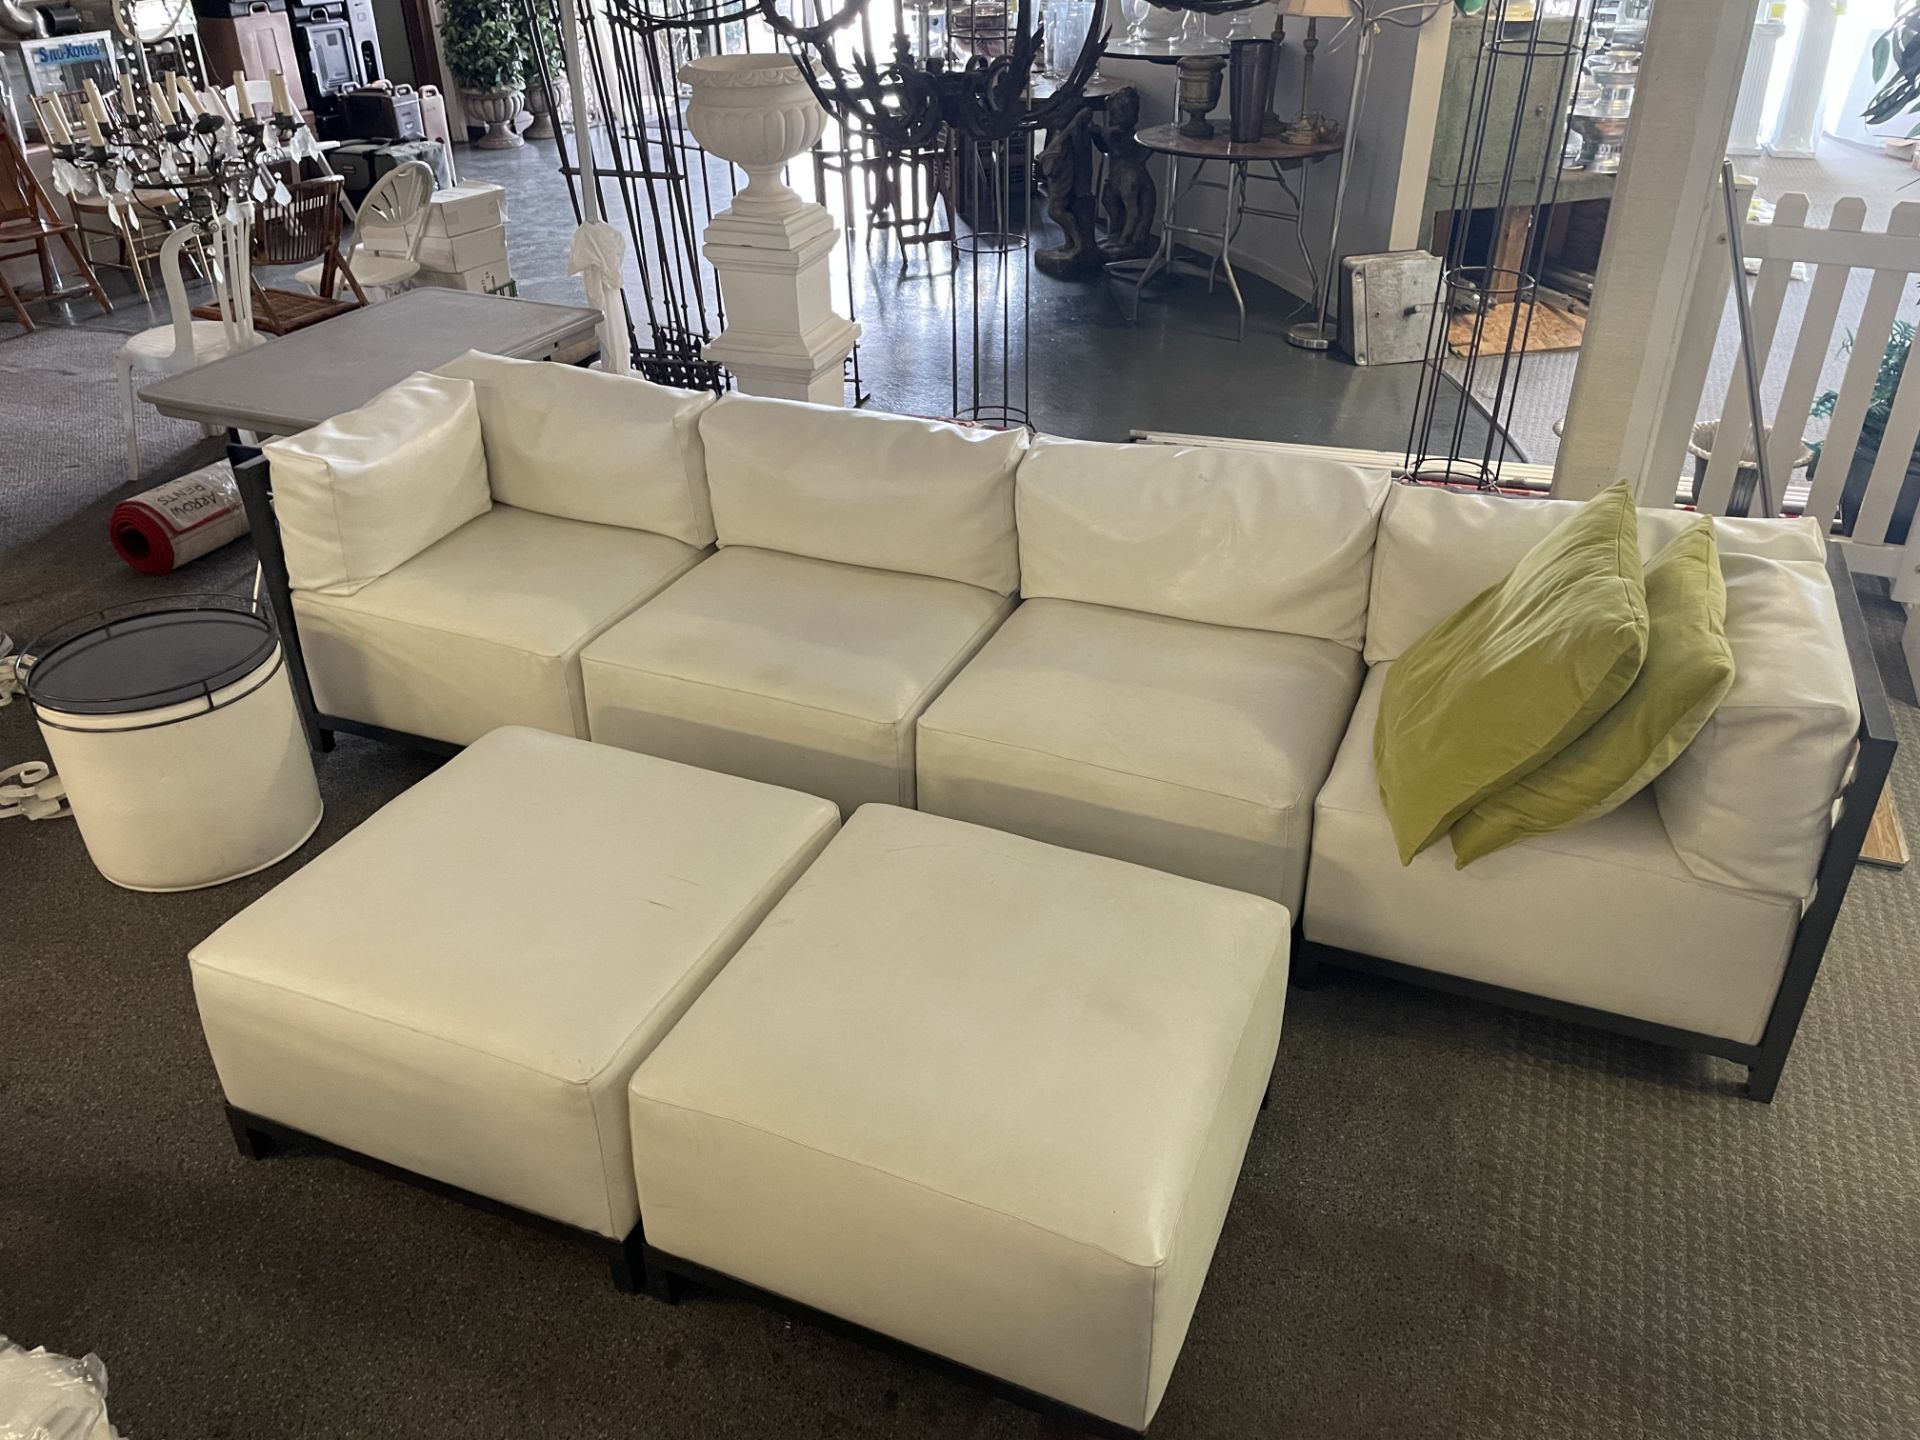 Lounge Furniture Set